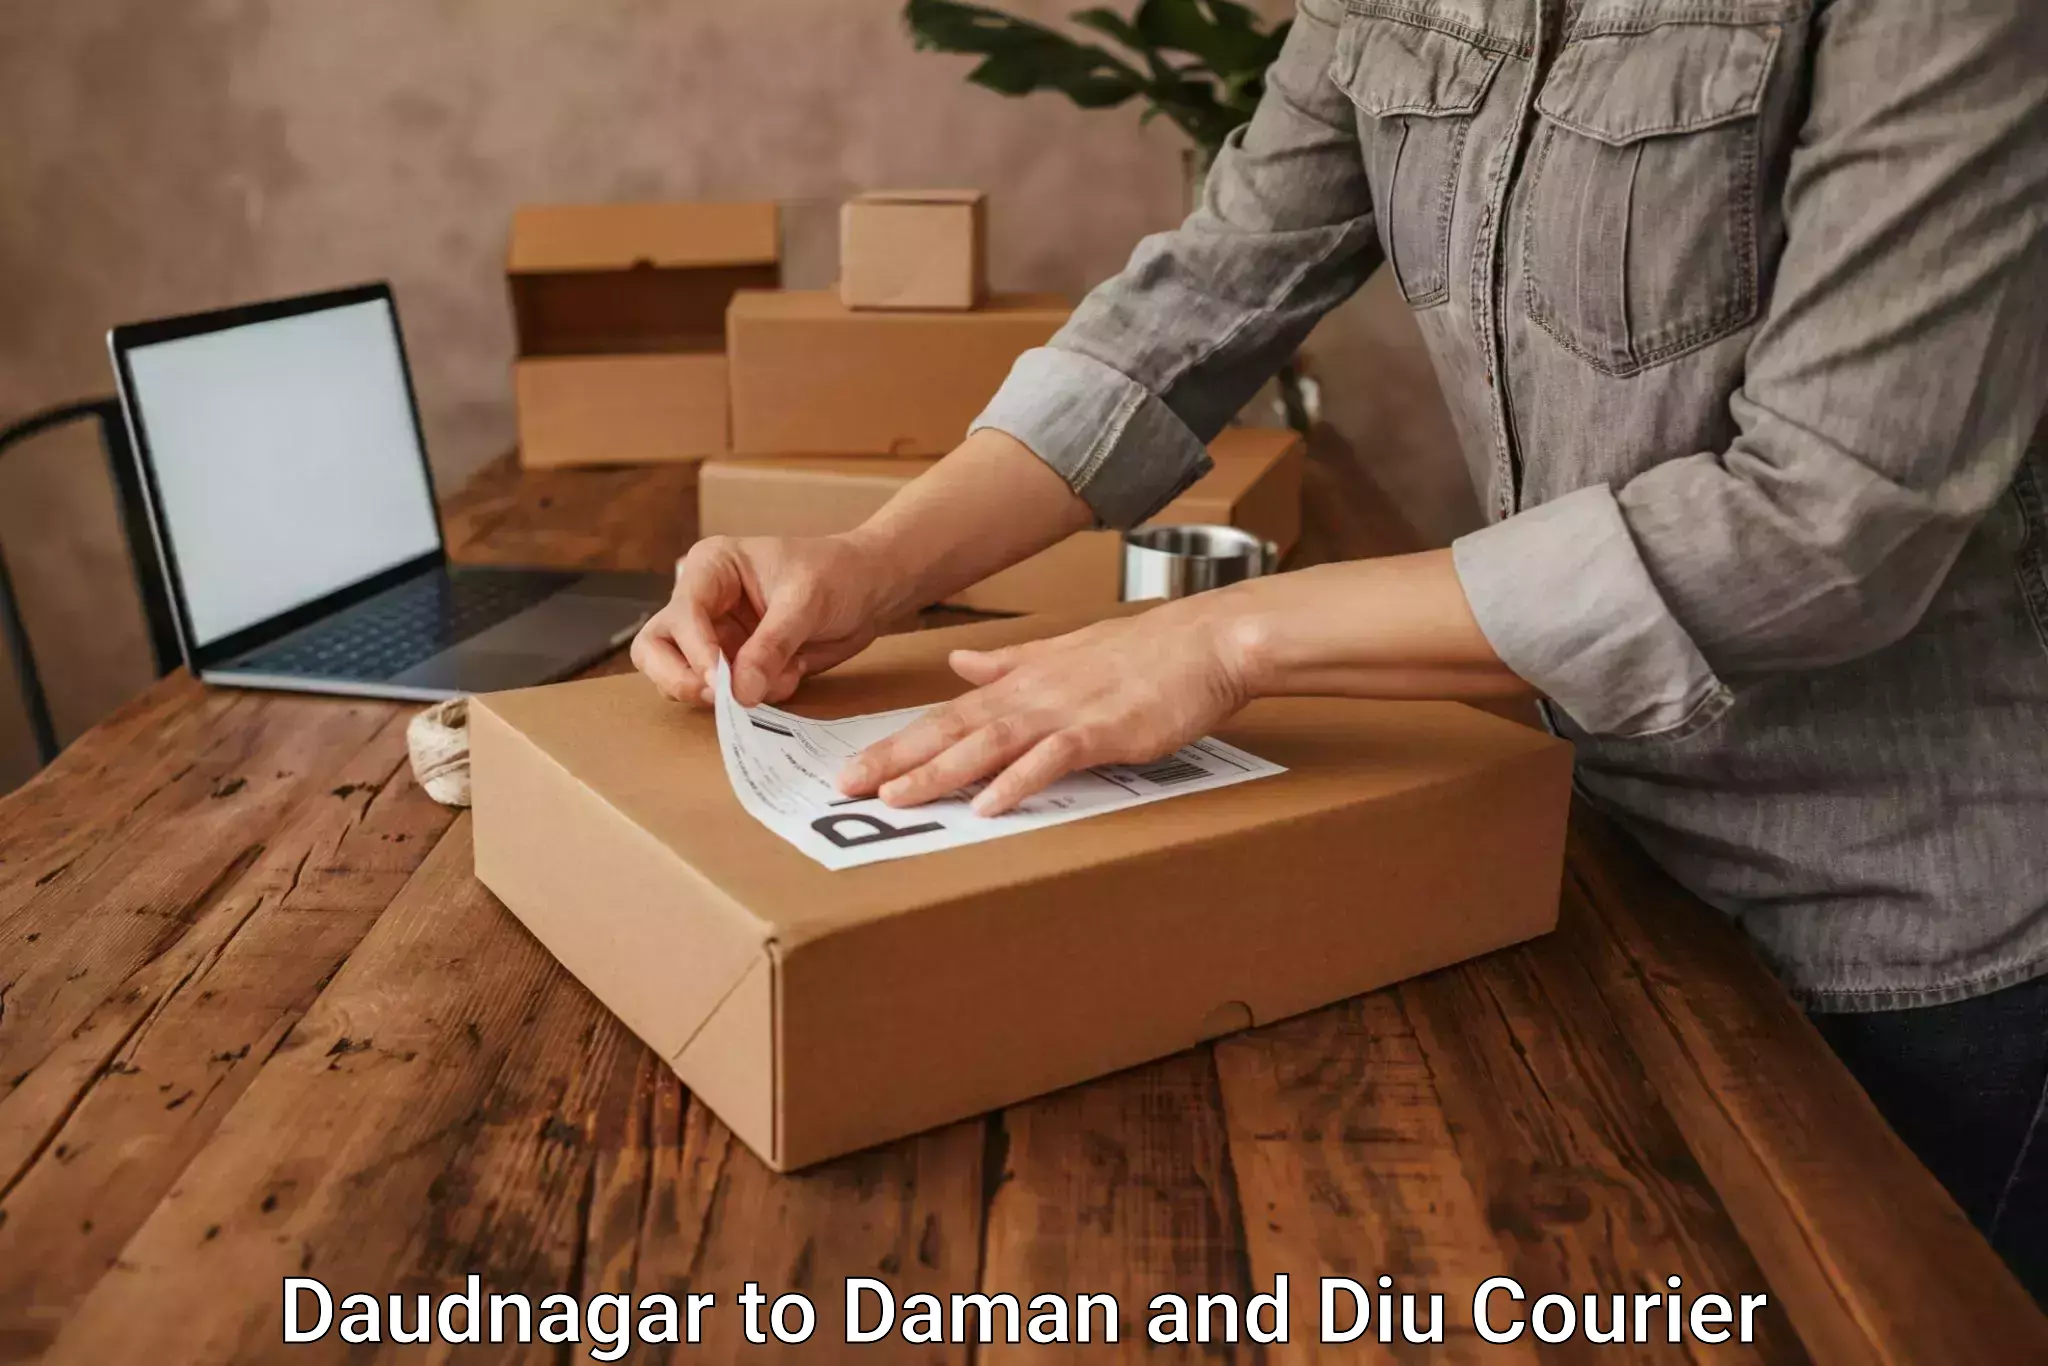 Furniture transport company Daudnagar to Daman